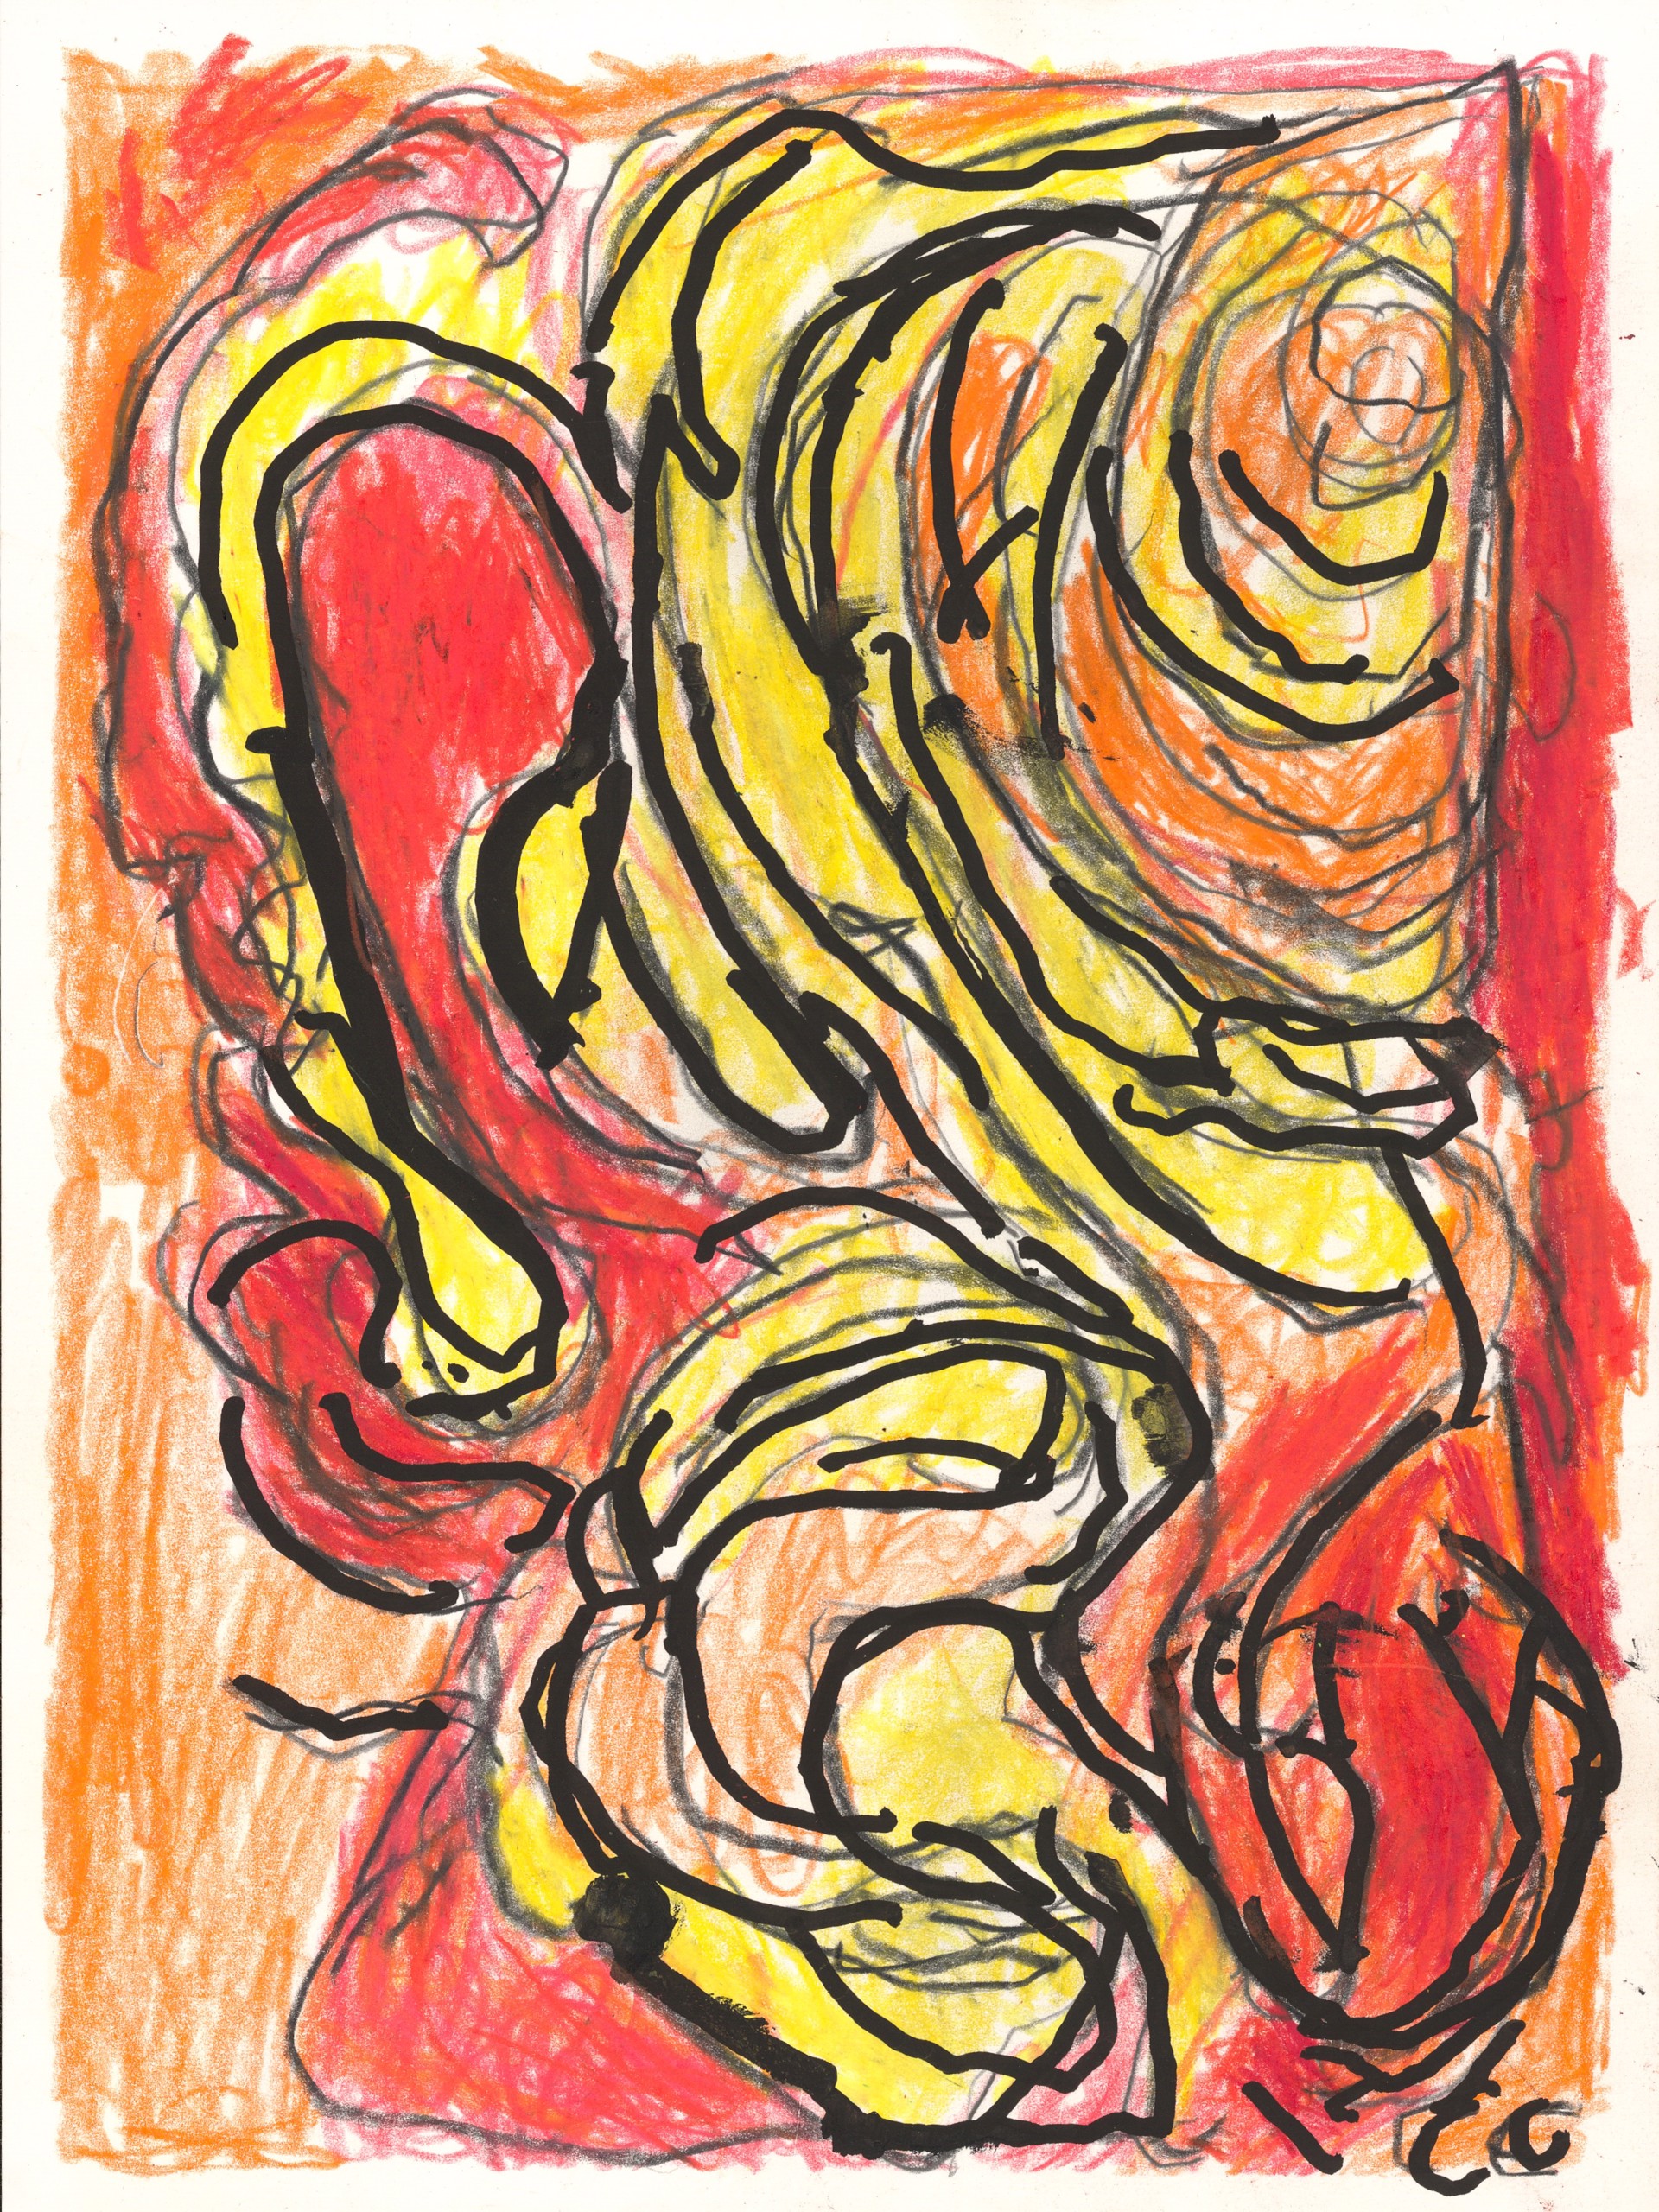 Fiery Abstract by Calvin "Sonny" Clarke